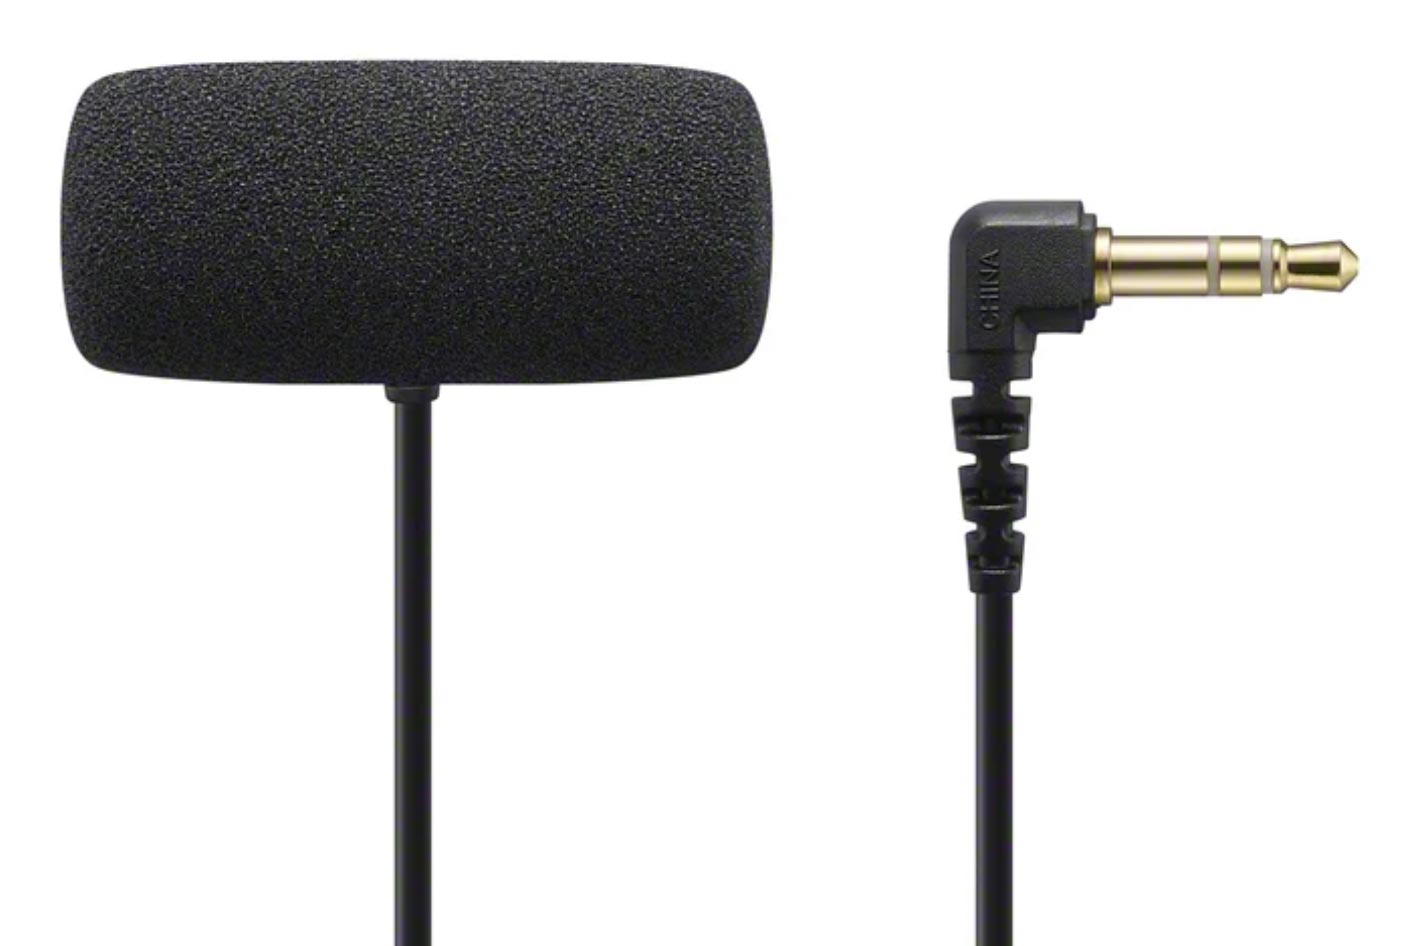 Sony announces ECM-W2BT and ECM-LV1 microphones for video creators